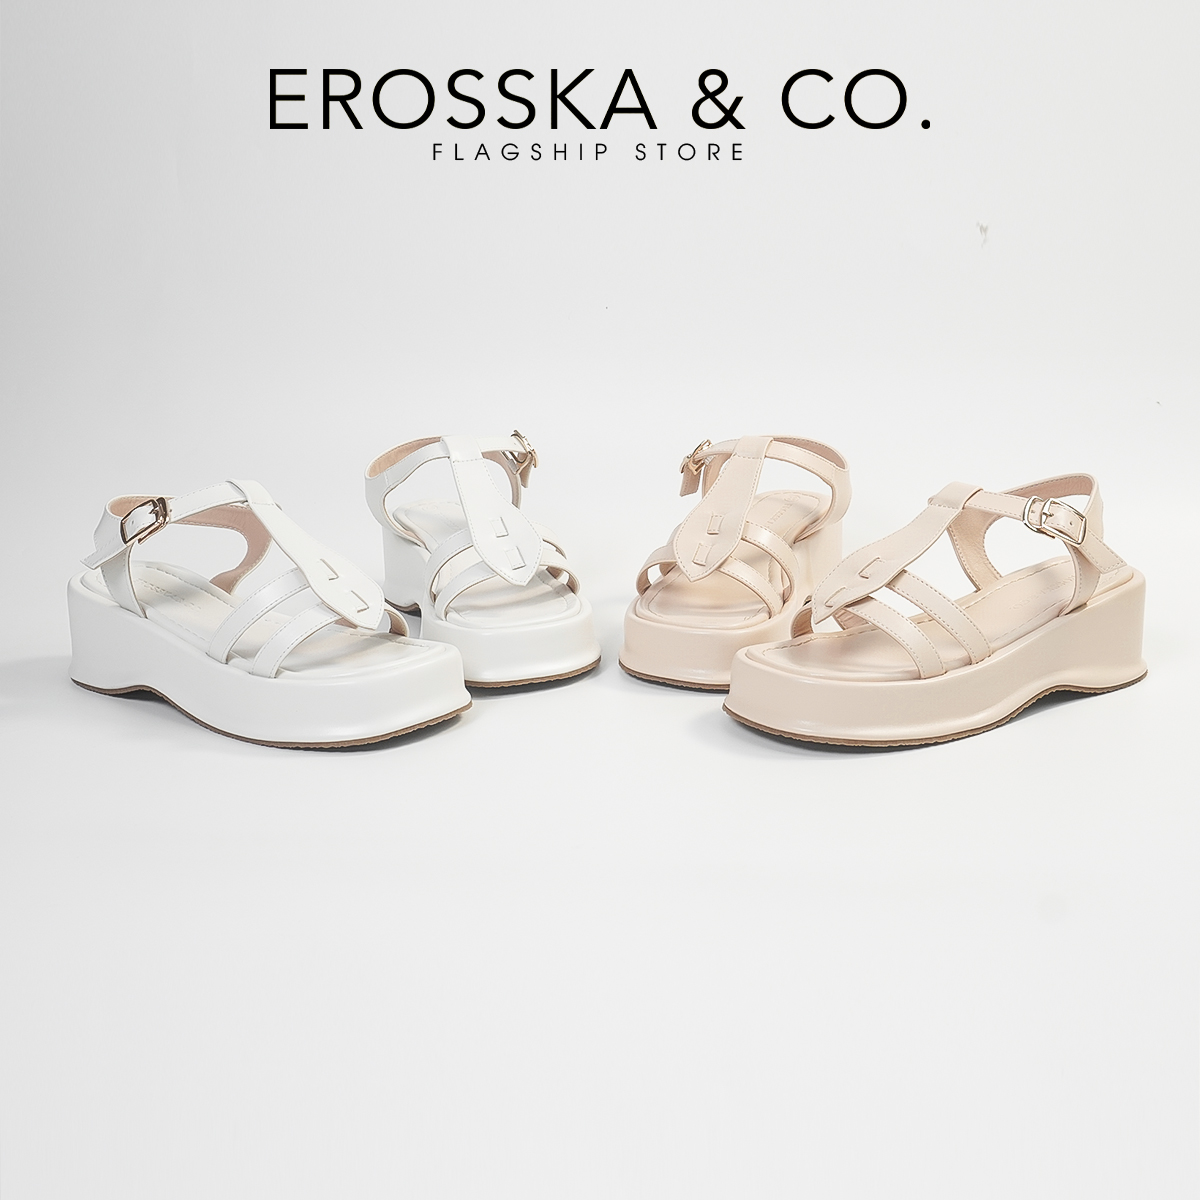 Erosska - Giày sandal nữ đế xuồng quai ngang thiết kế basic - SB027